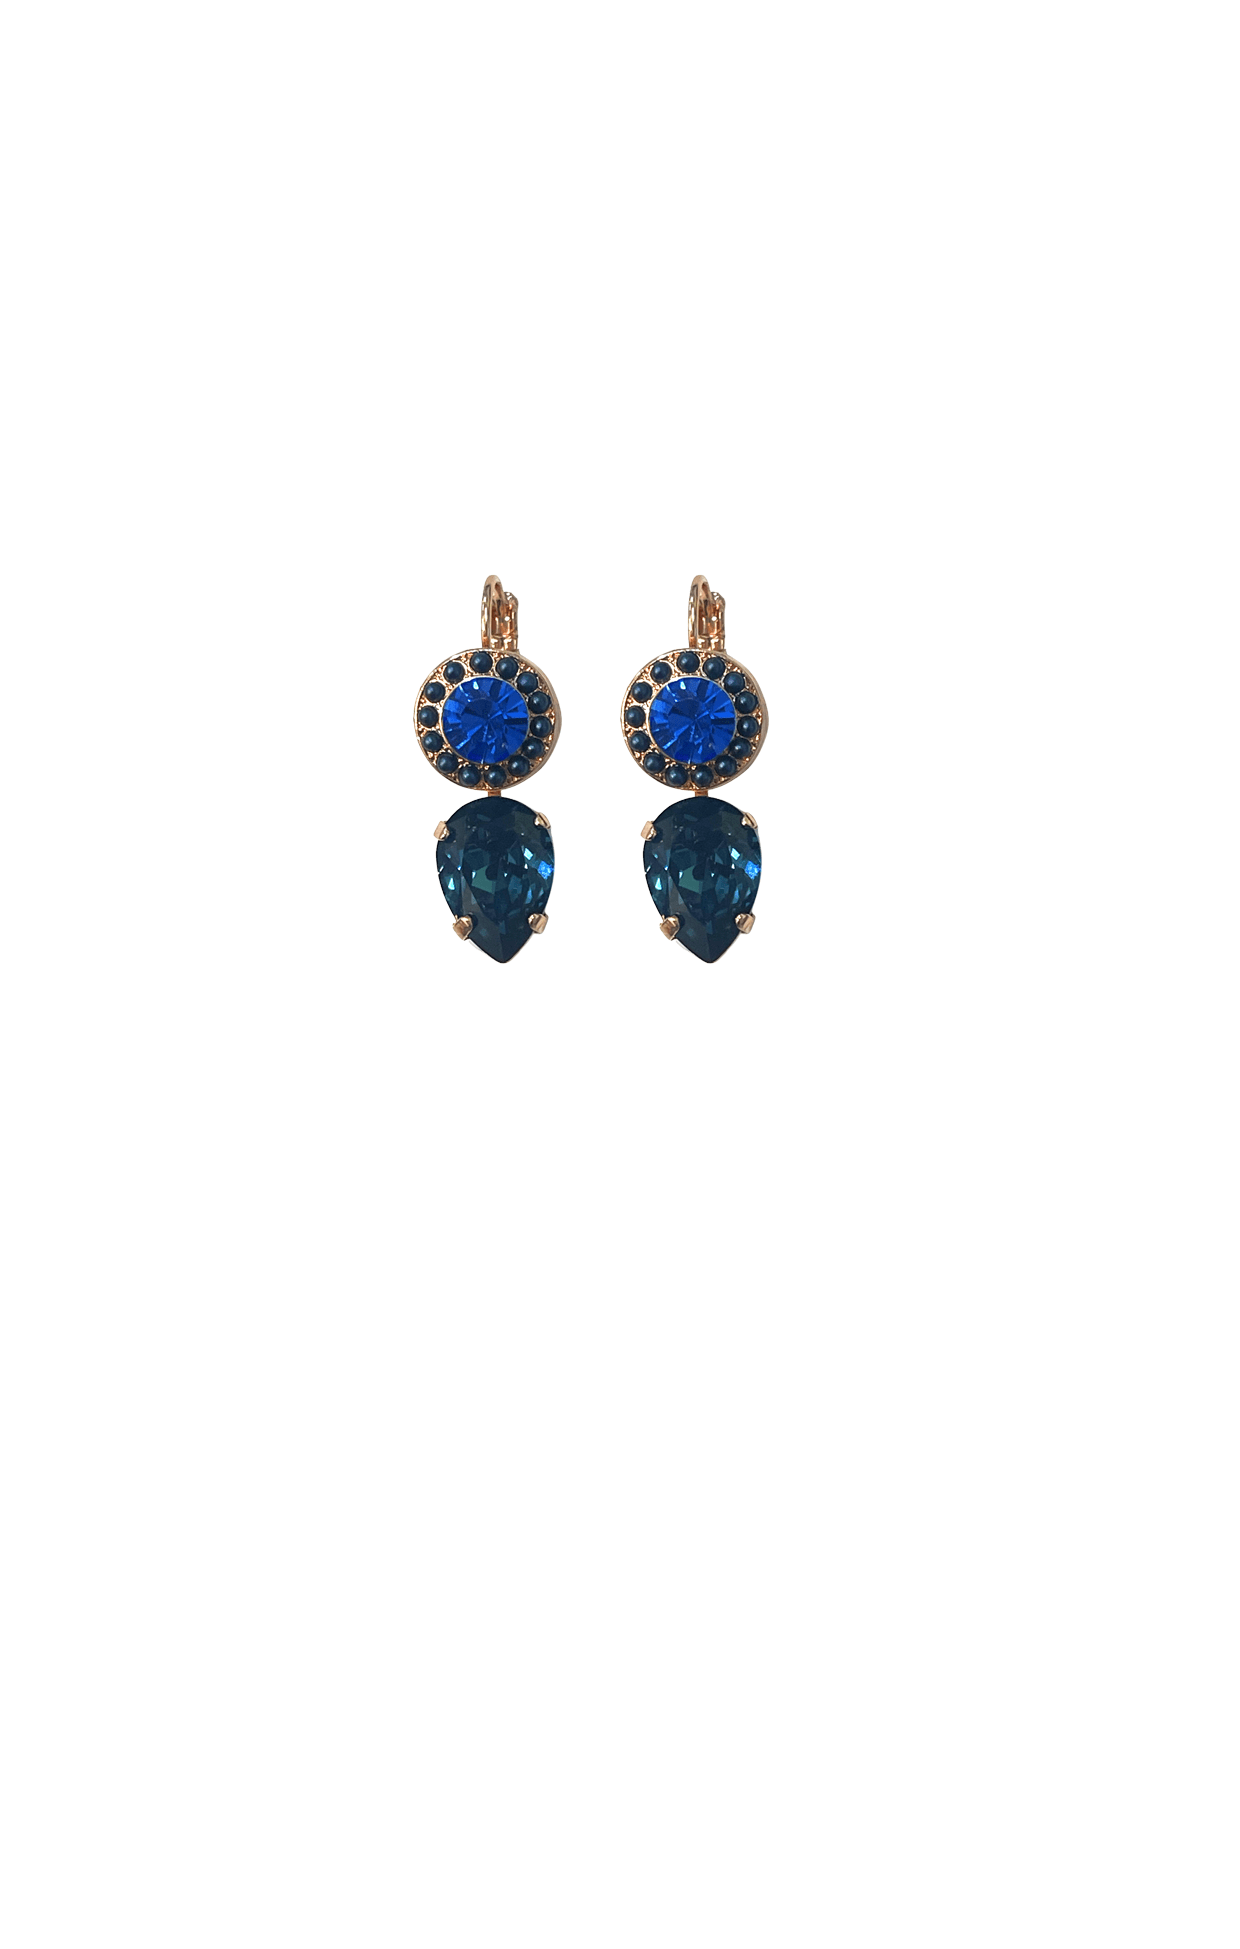 ACCESSORIES Earrings One Size / Blue HELSINKI EARRING IN BLUE AND DARK TEAL